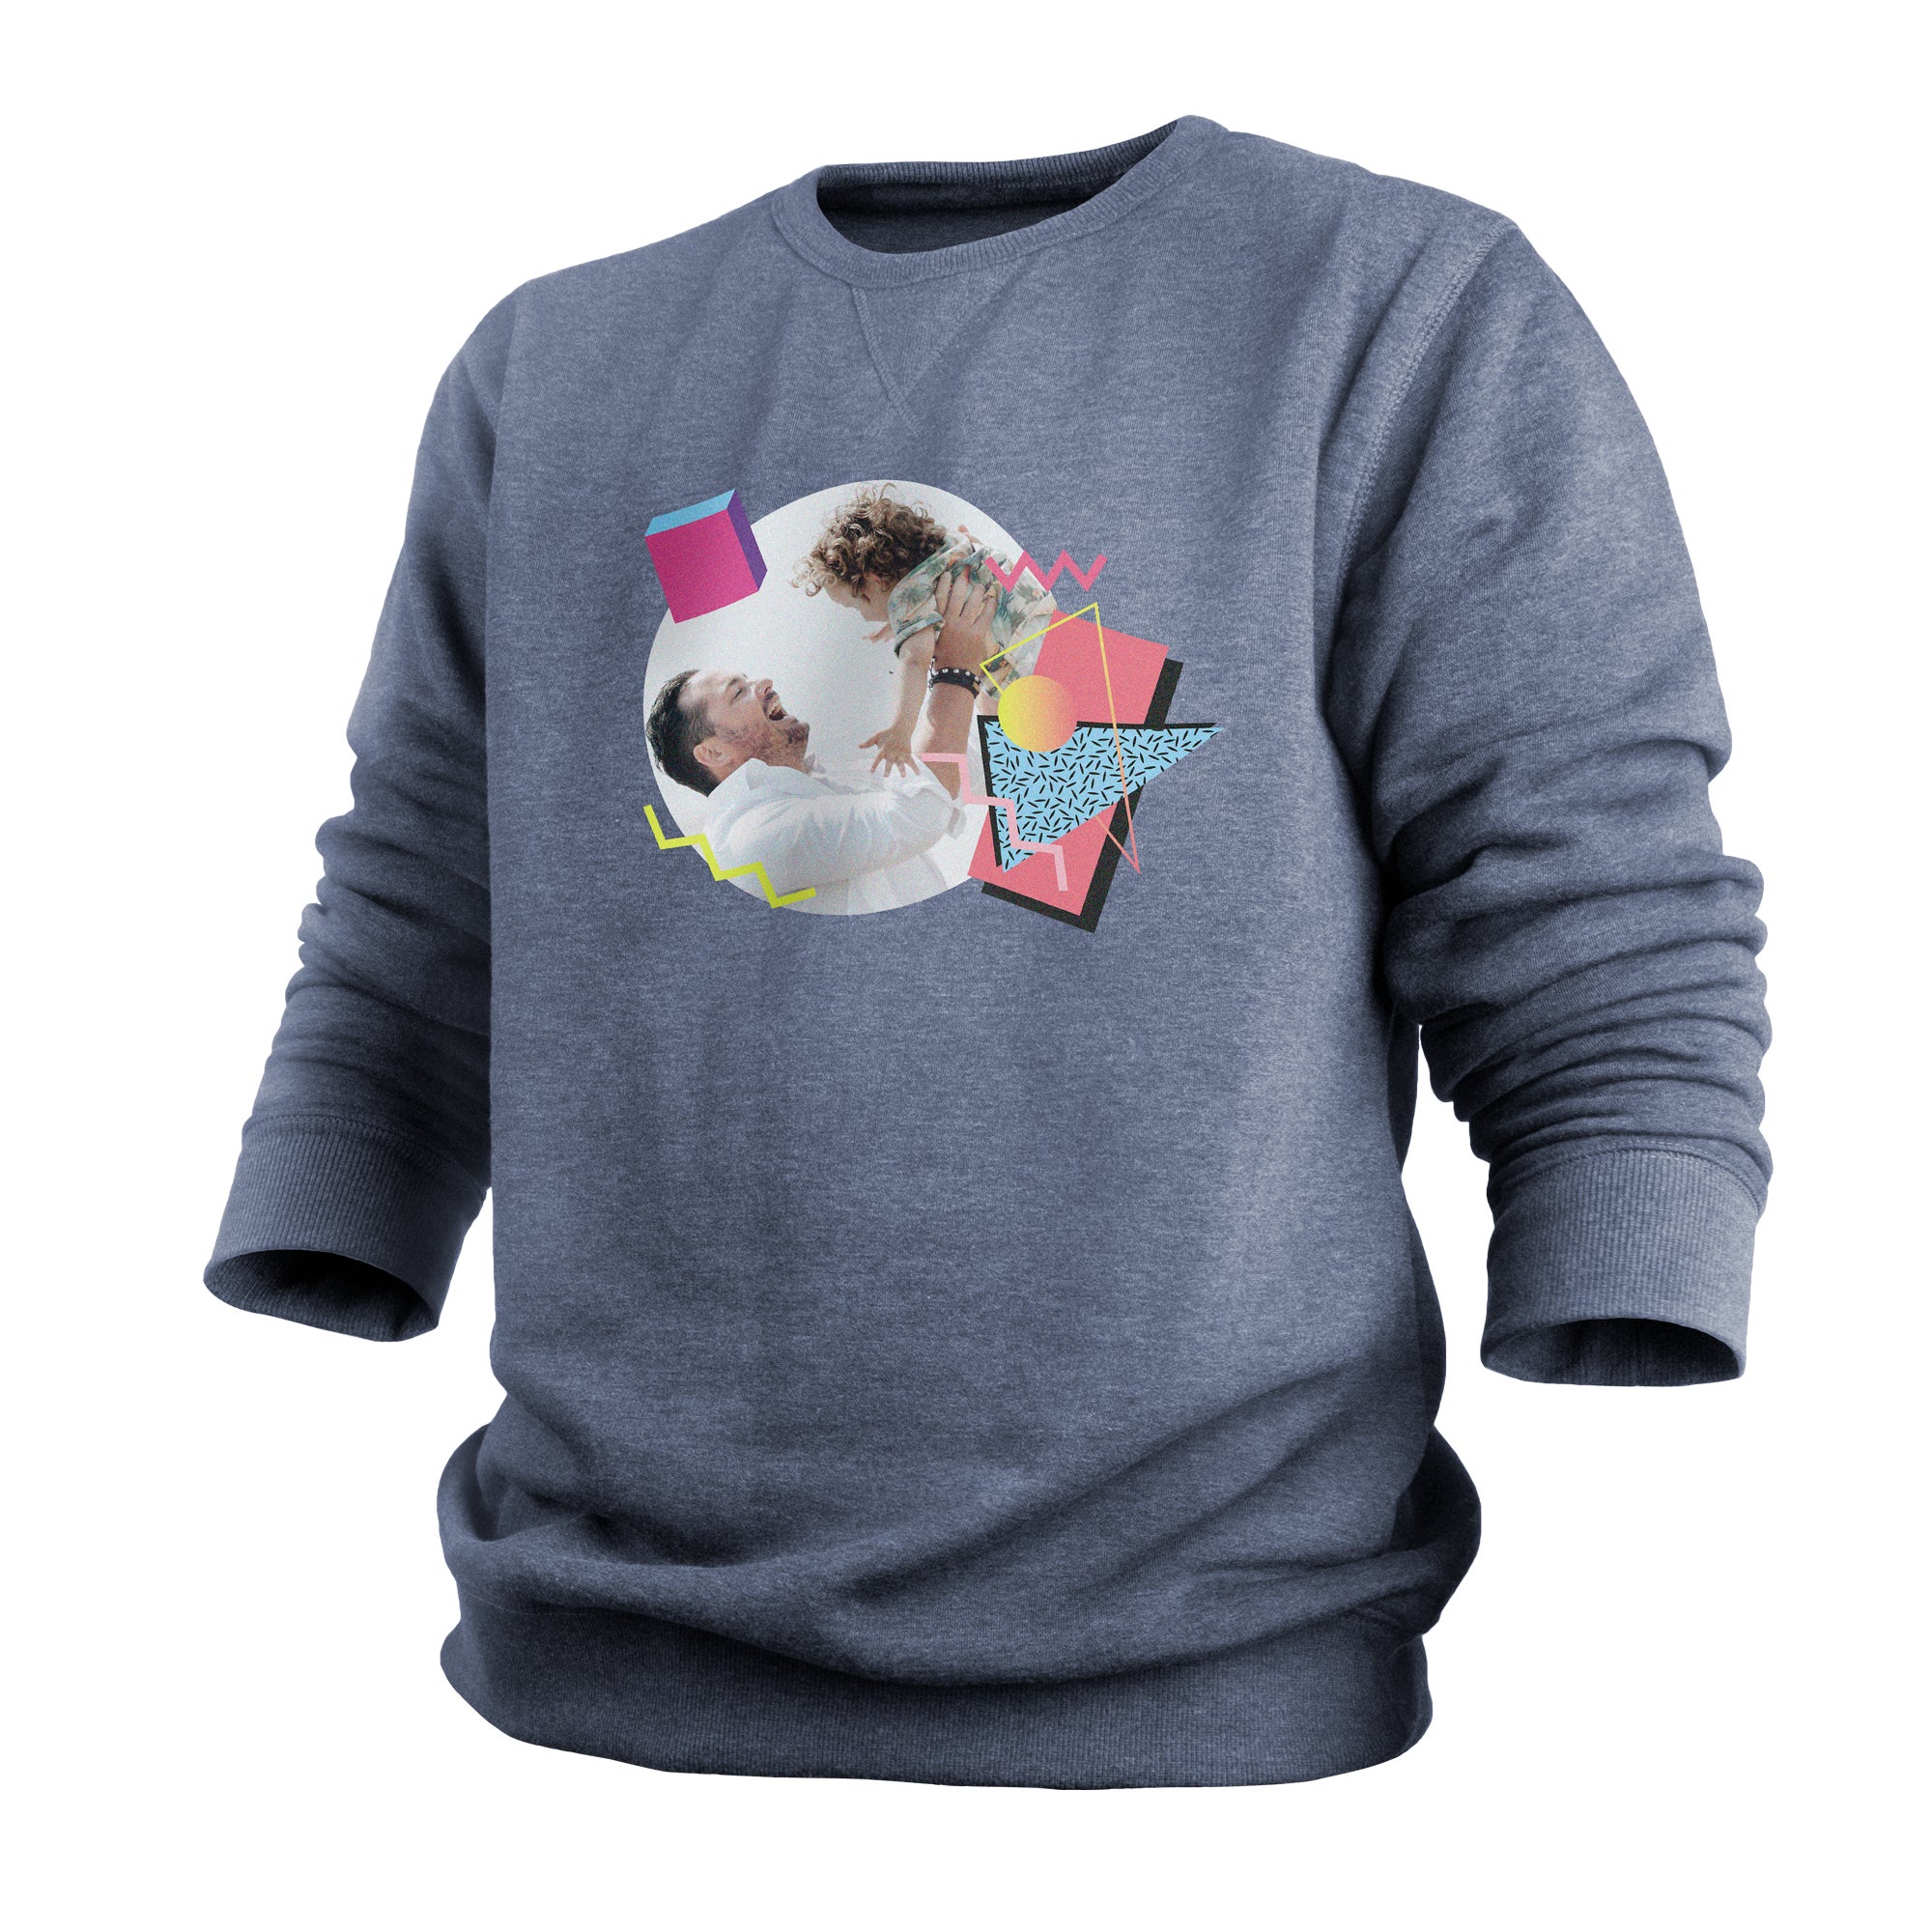 Personalised sweater - Men - Indigo - M